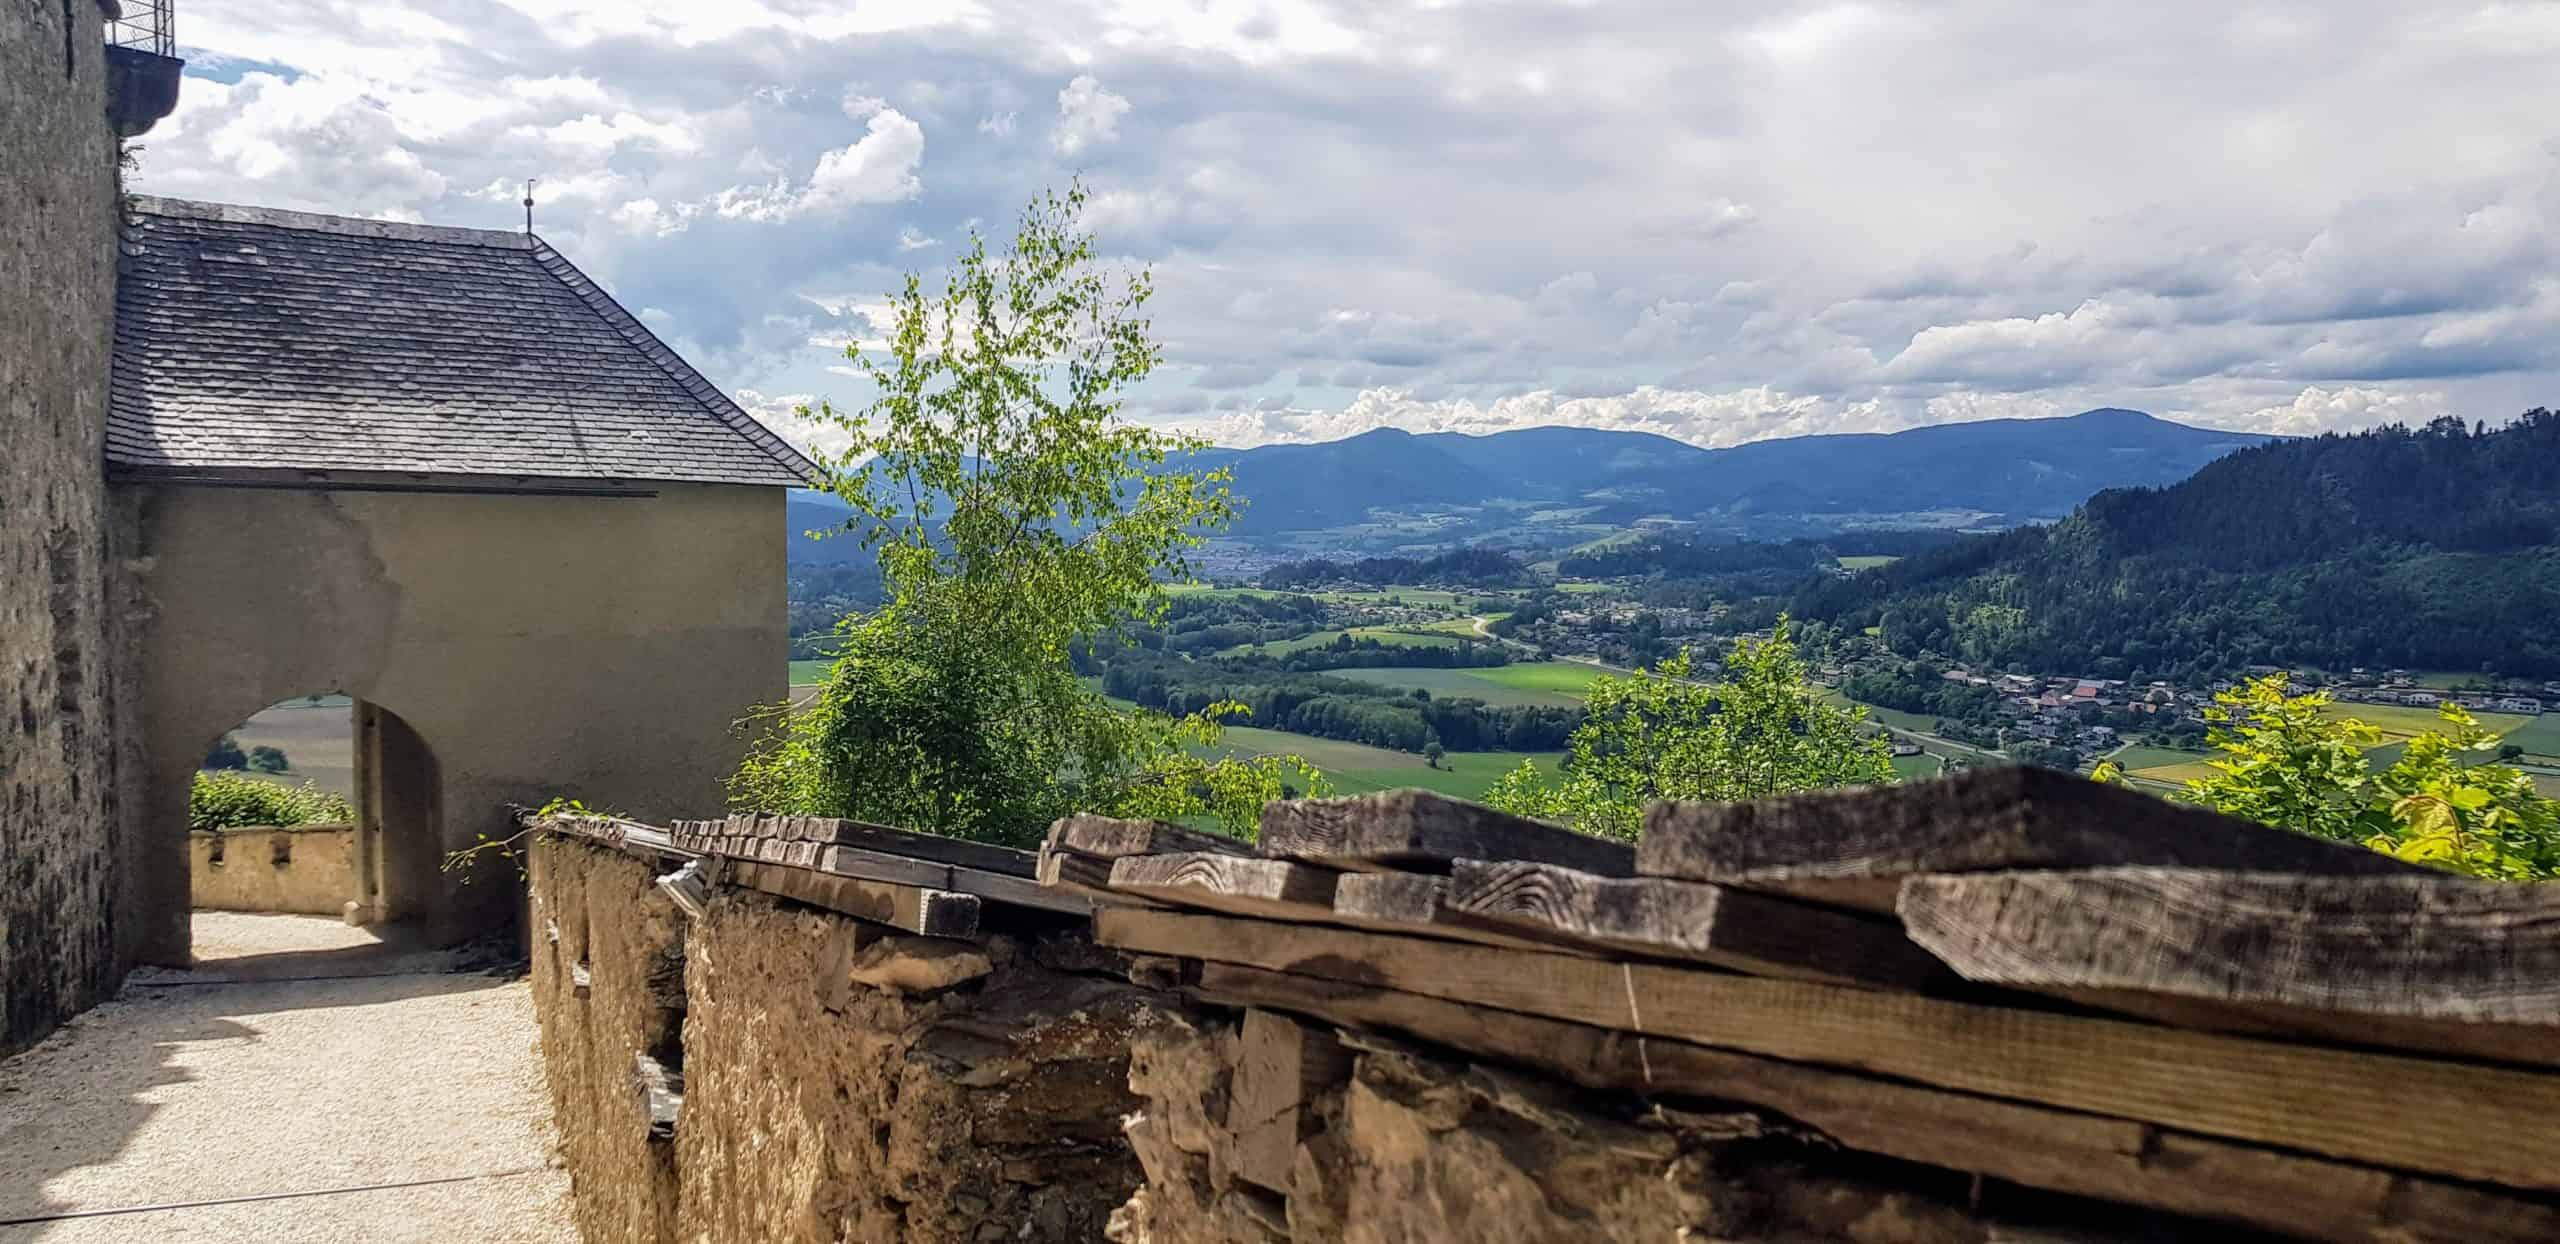 Mauertor Hochosterwitz mit Aussicht auf Landschaft - familienfreundliches Ausflugsziel in Kärnten, Nähe Klagenfurt und St. Veit